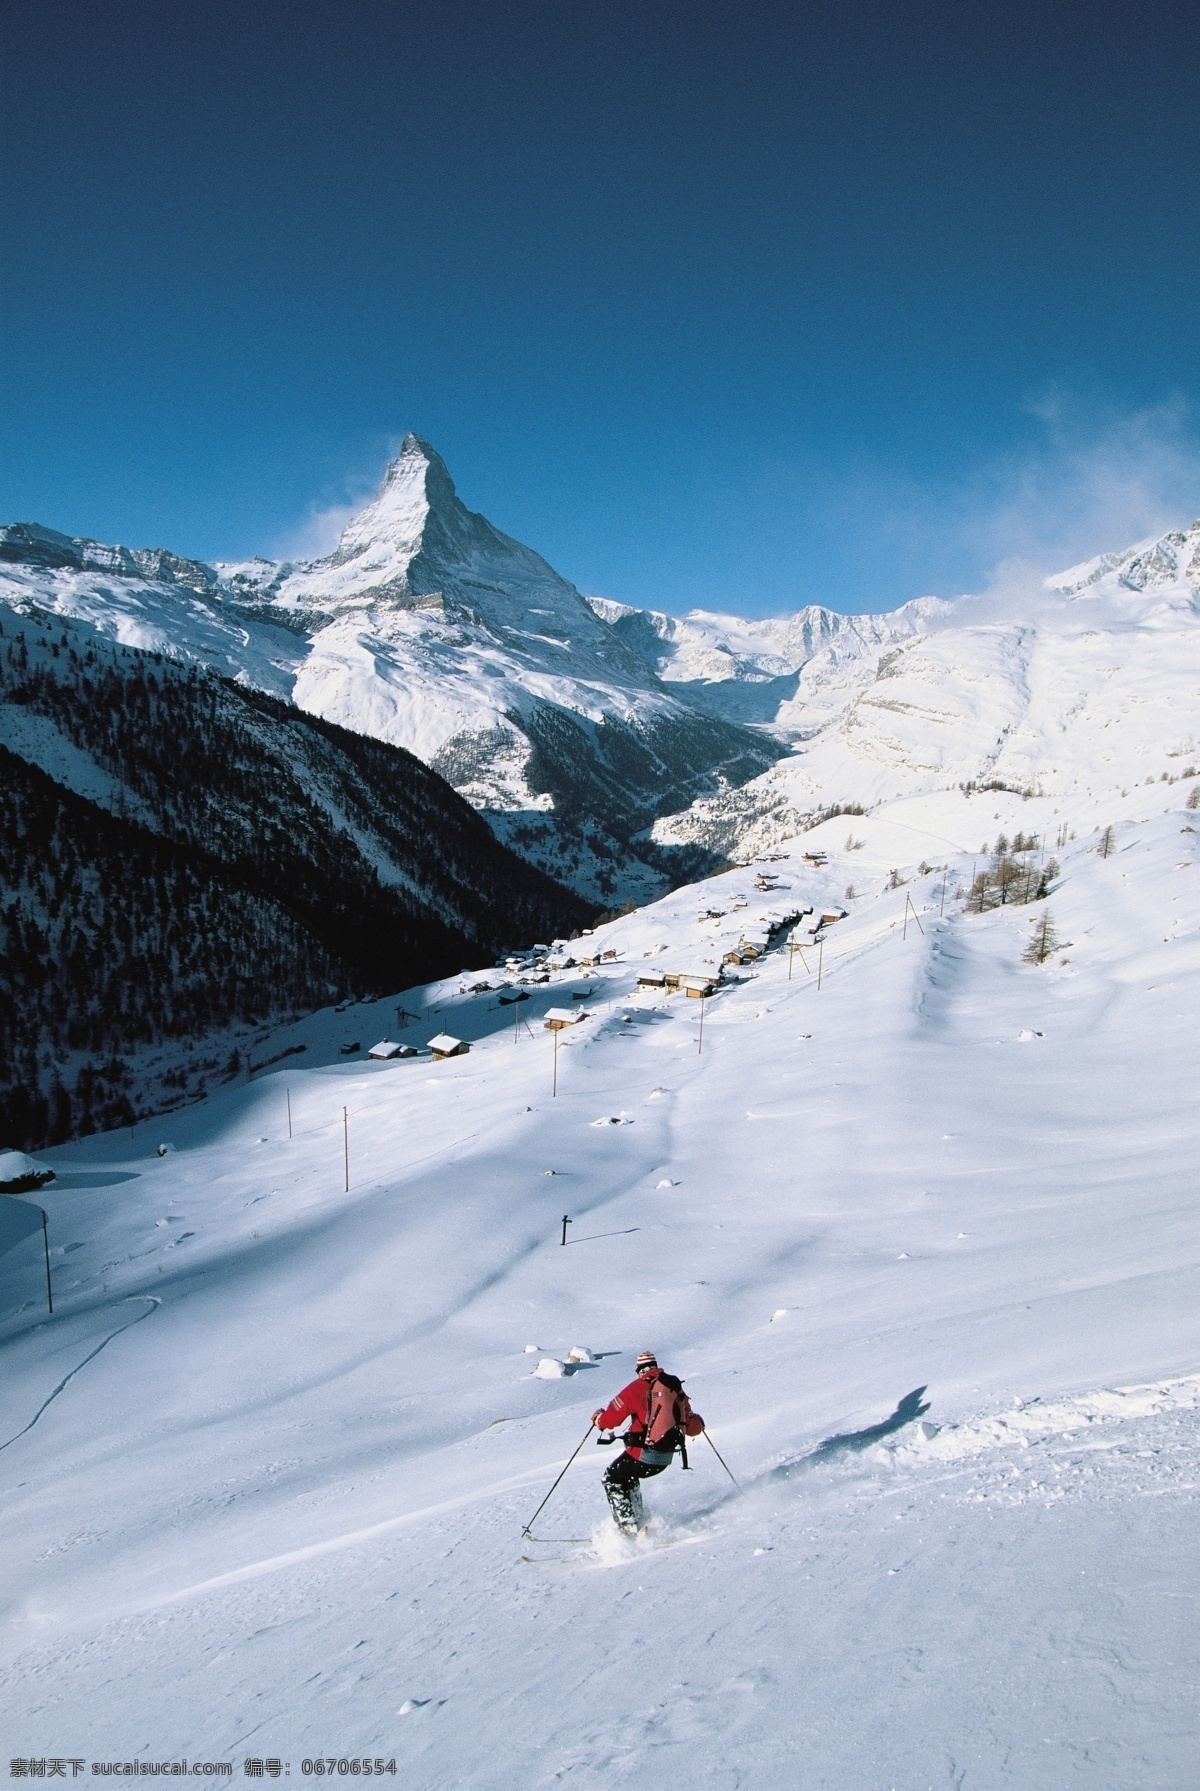 雪地 上 滑雪 运动员 高清 冬天 雪地运动 划雪运动 极限运动 体育项目 下滑 速度 运动图片 生活百科 雪山 美丽 雪景 风景 摄影图片 高清图片 体育运动 蓝色